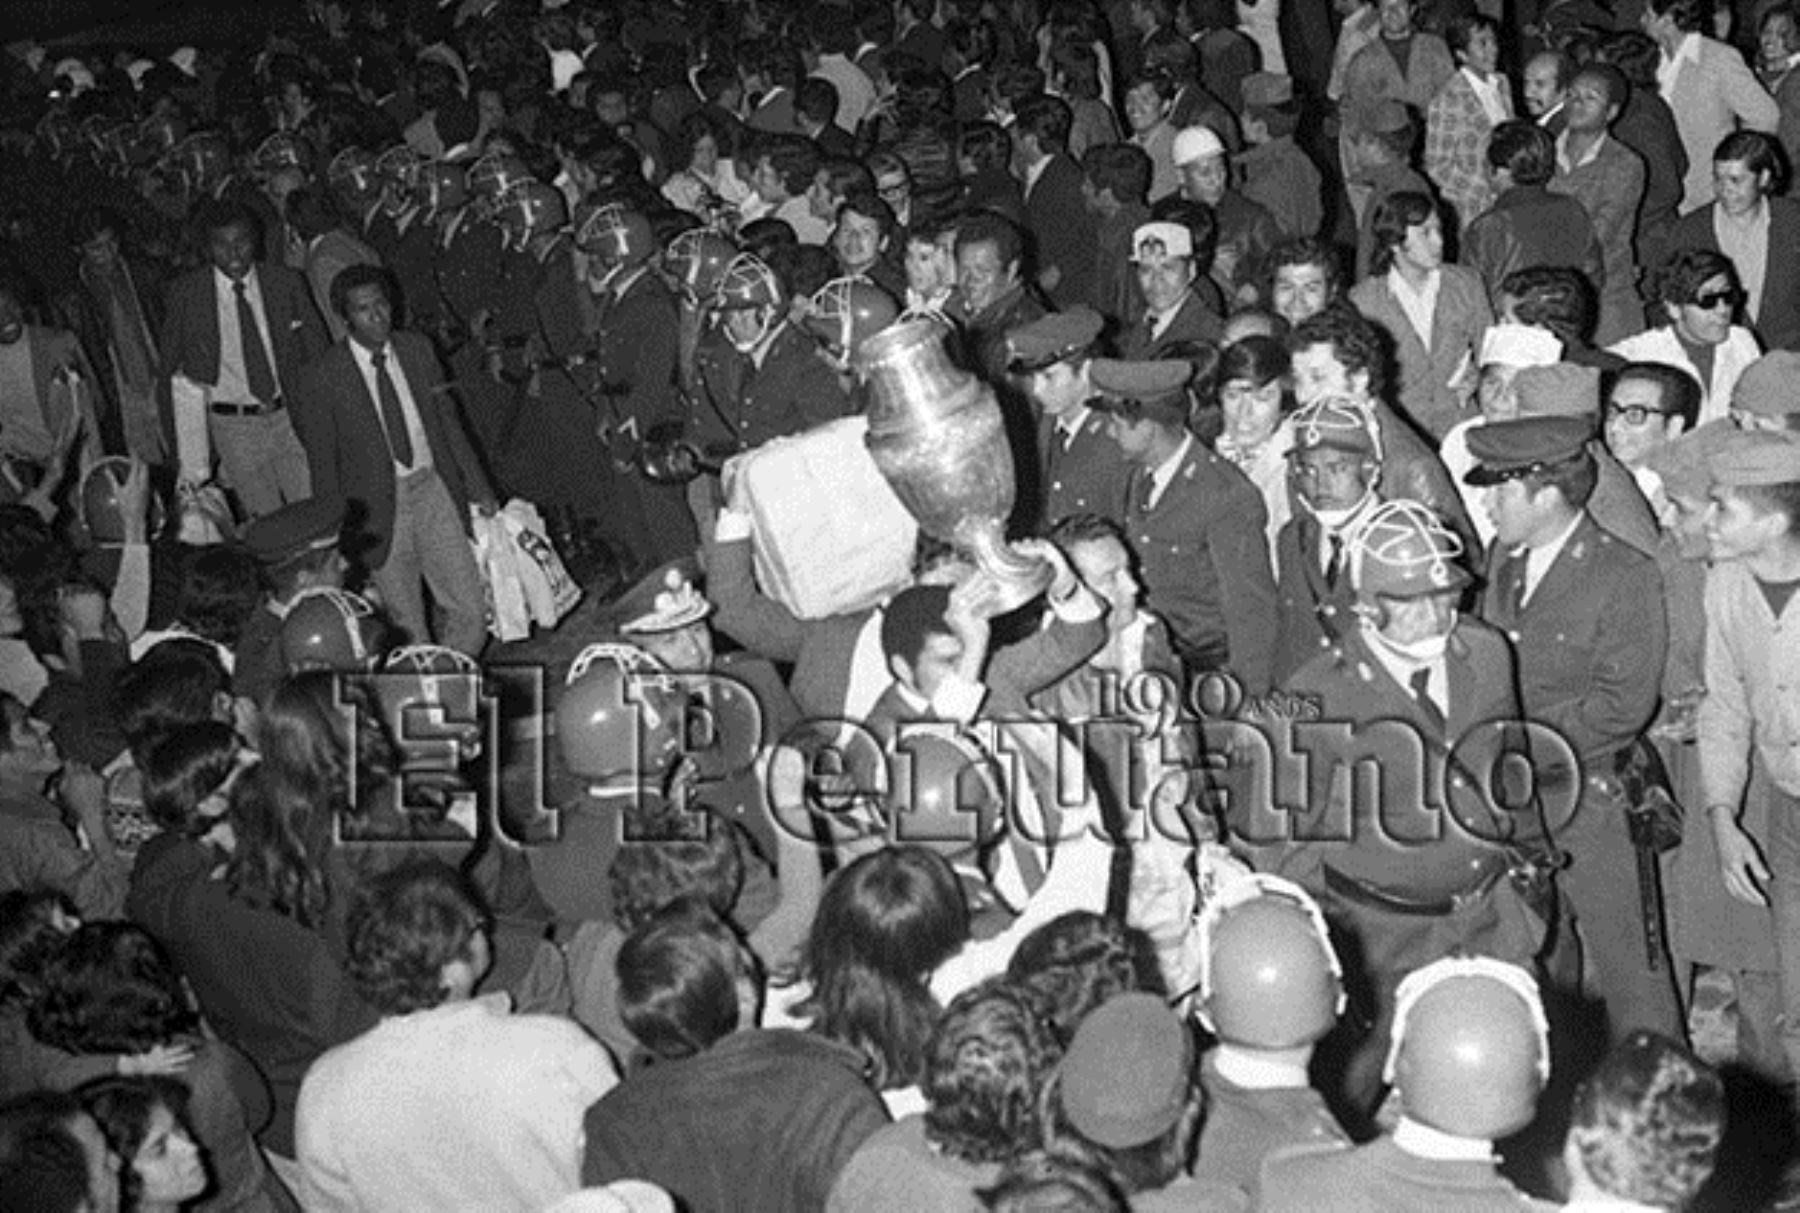 Callao - 31 octubre 1975 / Llegada de la selección peruana de fútbol al aeropuerto internacional Jorge Chávez. Perú se coronó campeón sudamericano al vencer en la final a Colombia 1-0 en Caracas. Los campeones fueron recibidos por una multitud de más de 20 mil hinchas.Foto: ANDINA/ Archivo El Peruano